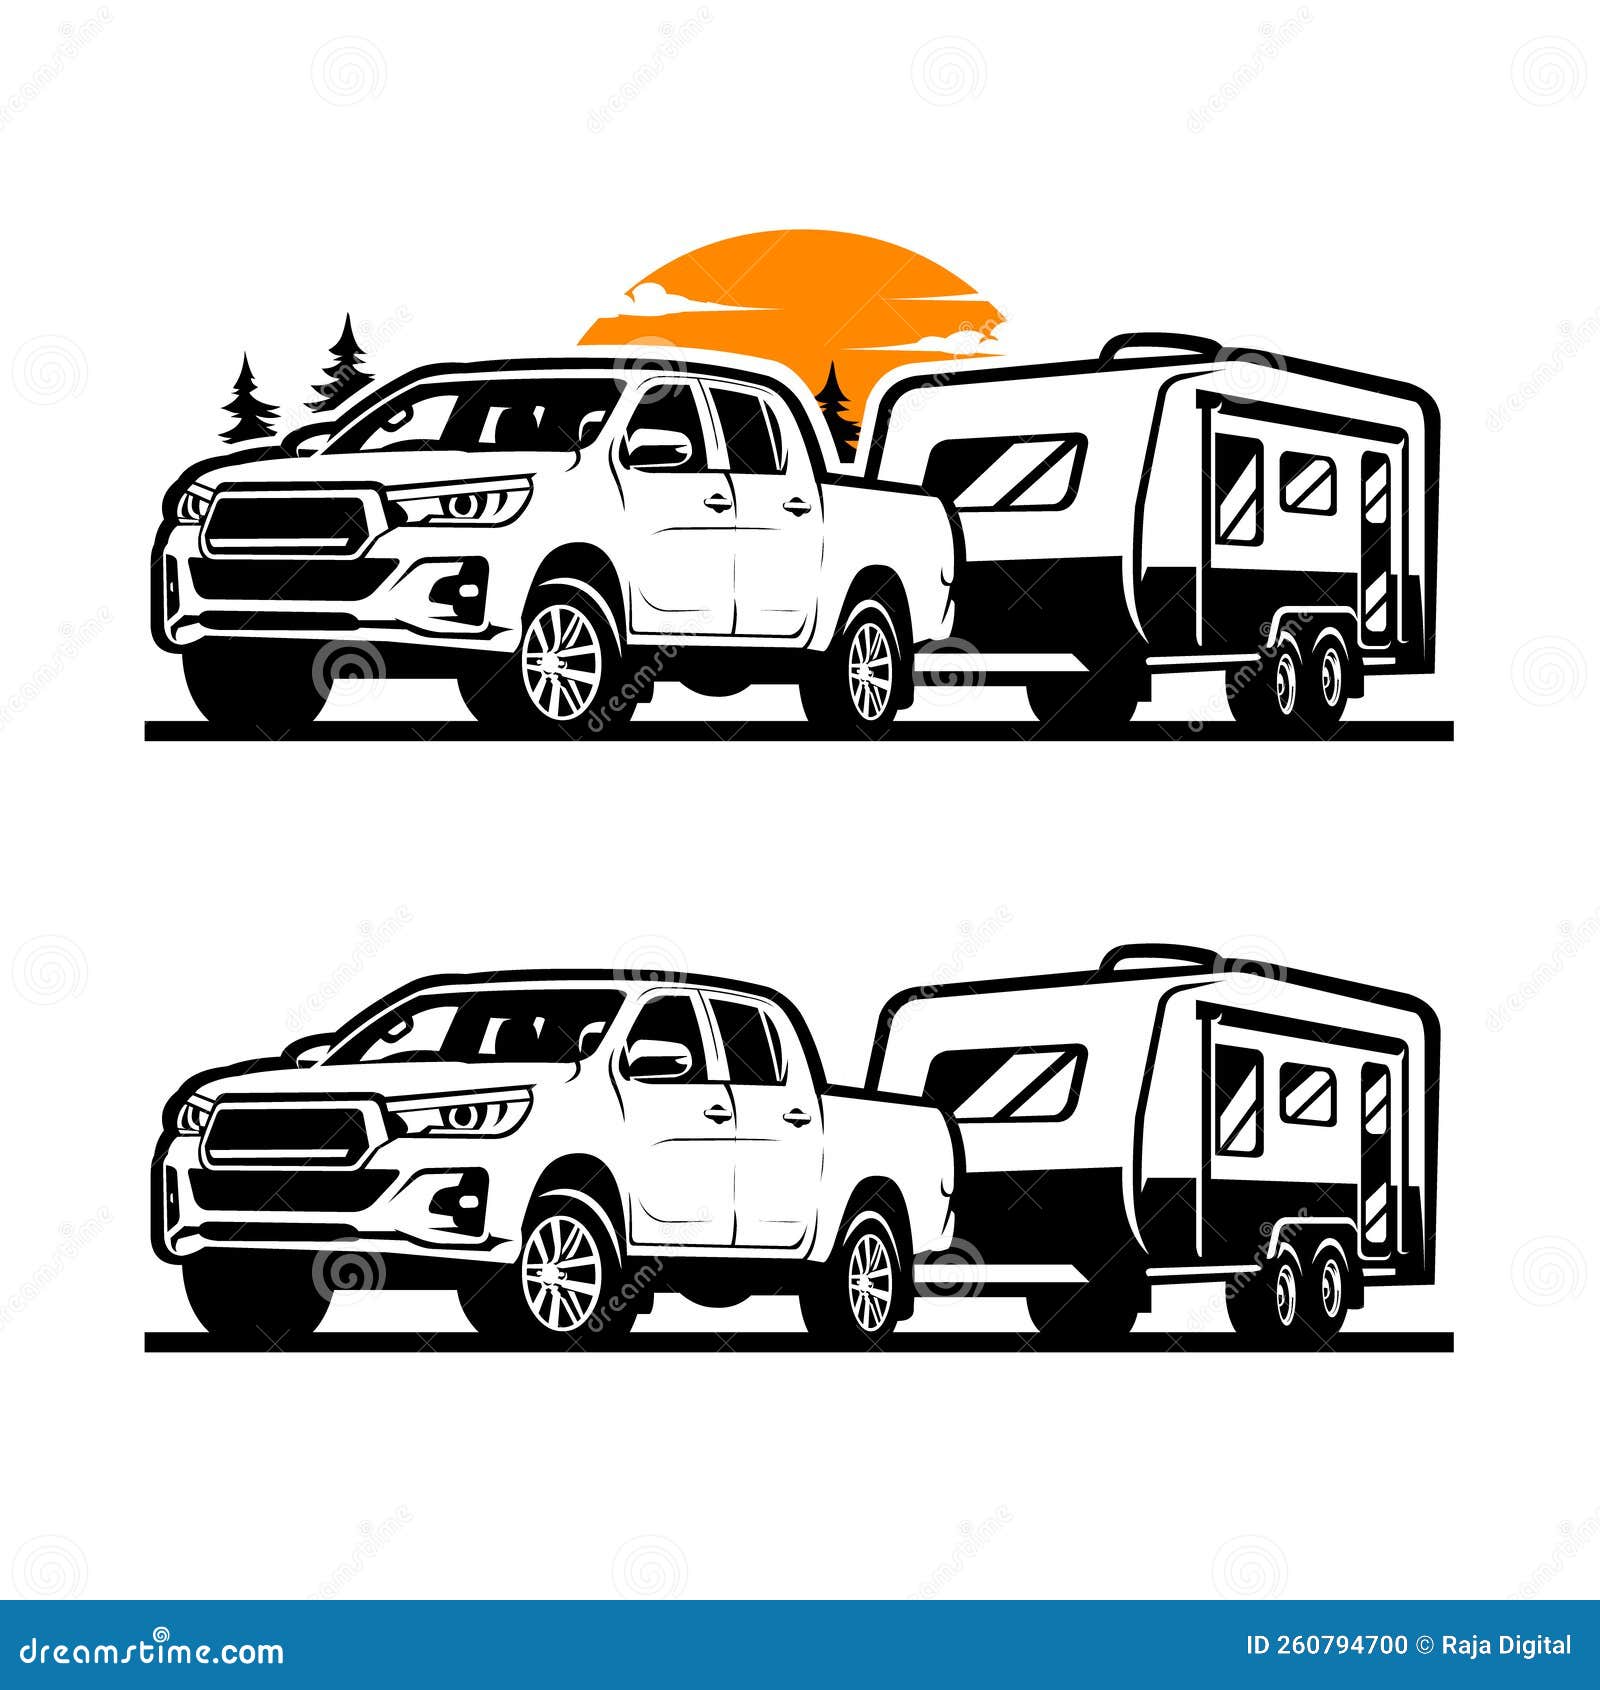 Premium Truck Tow Caravan Vector Illustration. Stock Vector ...